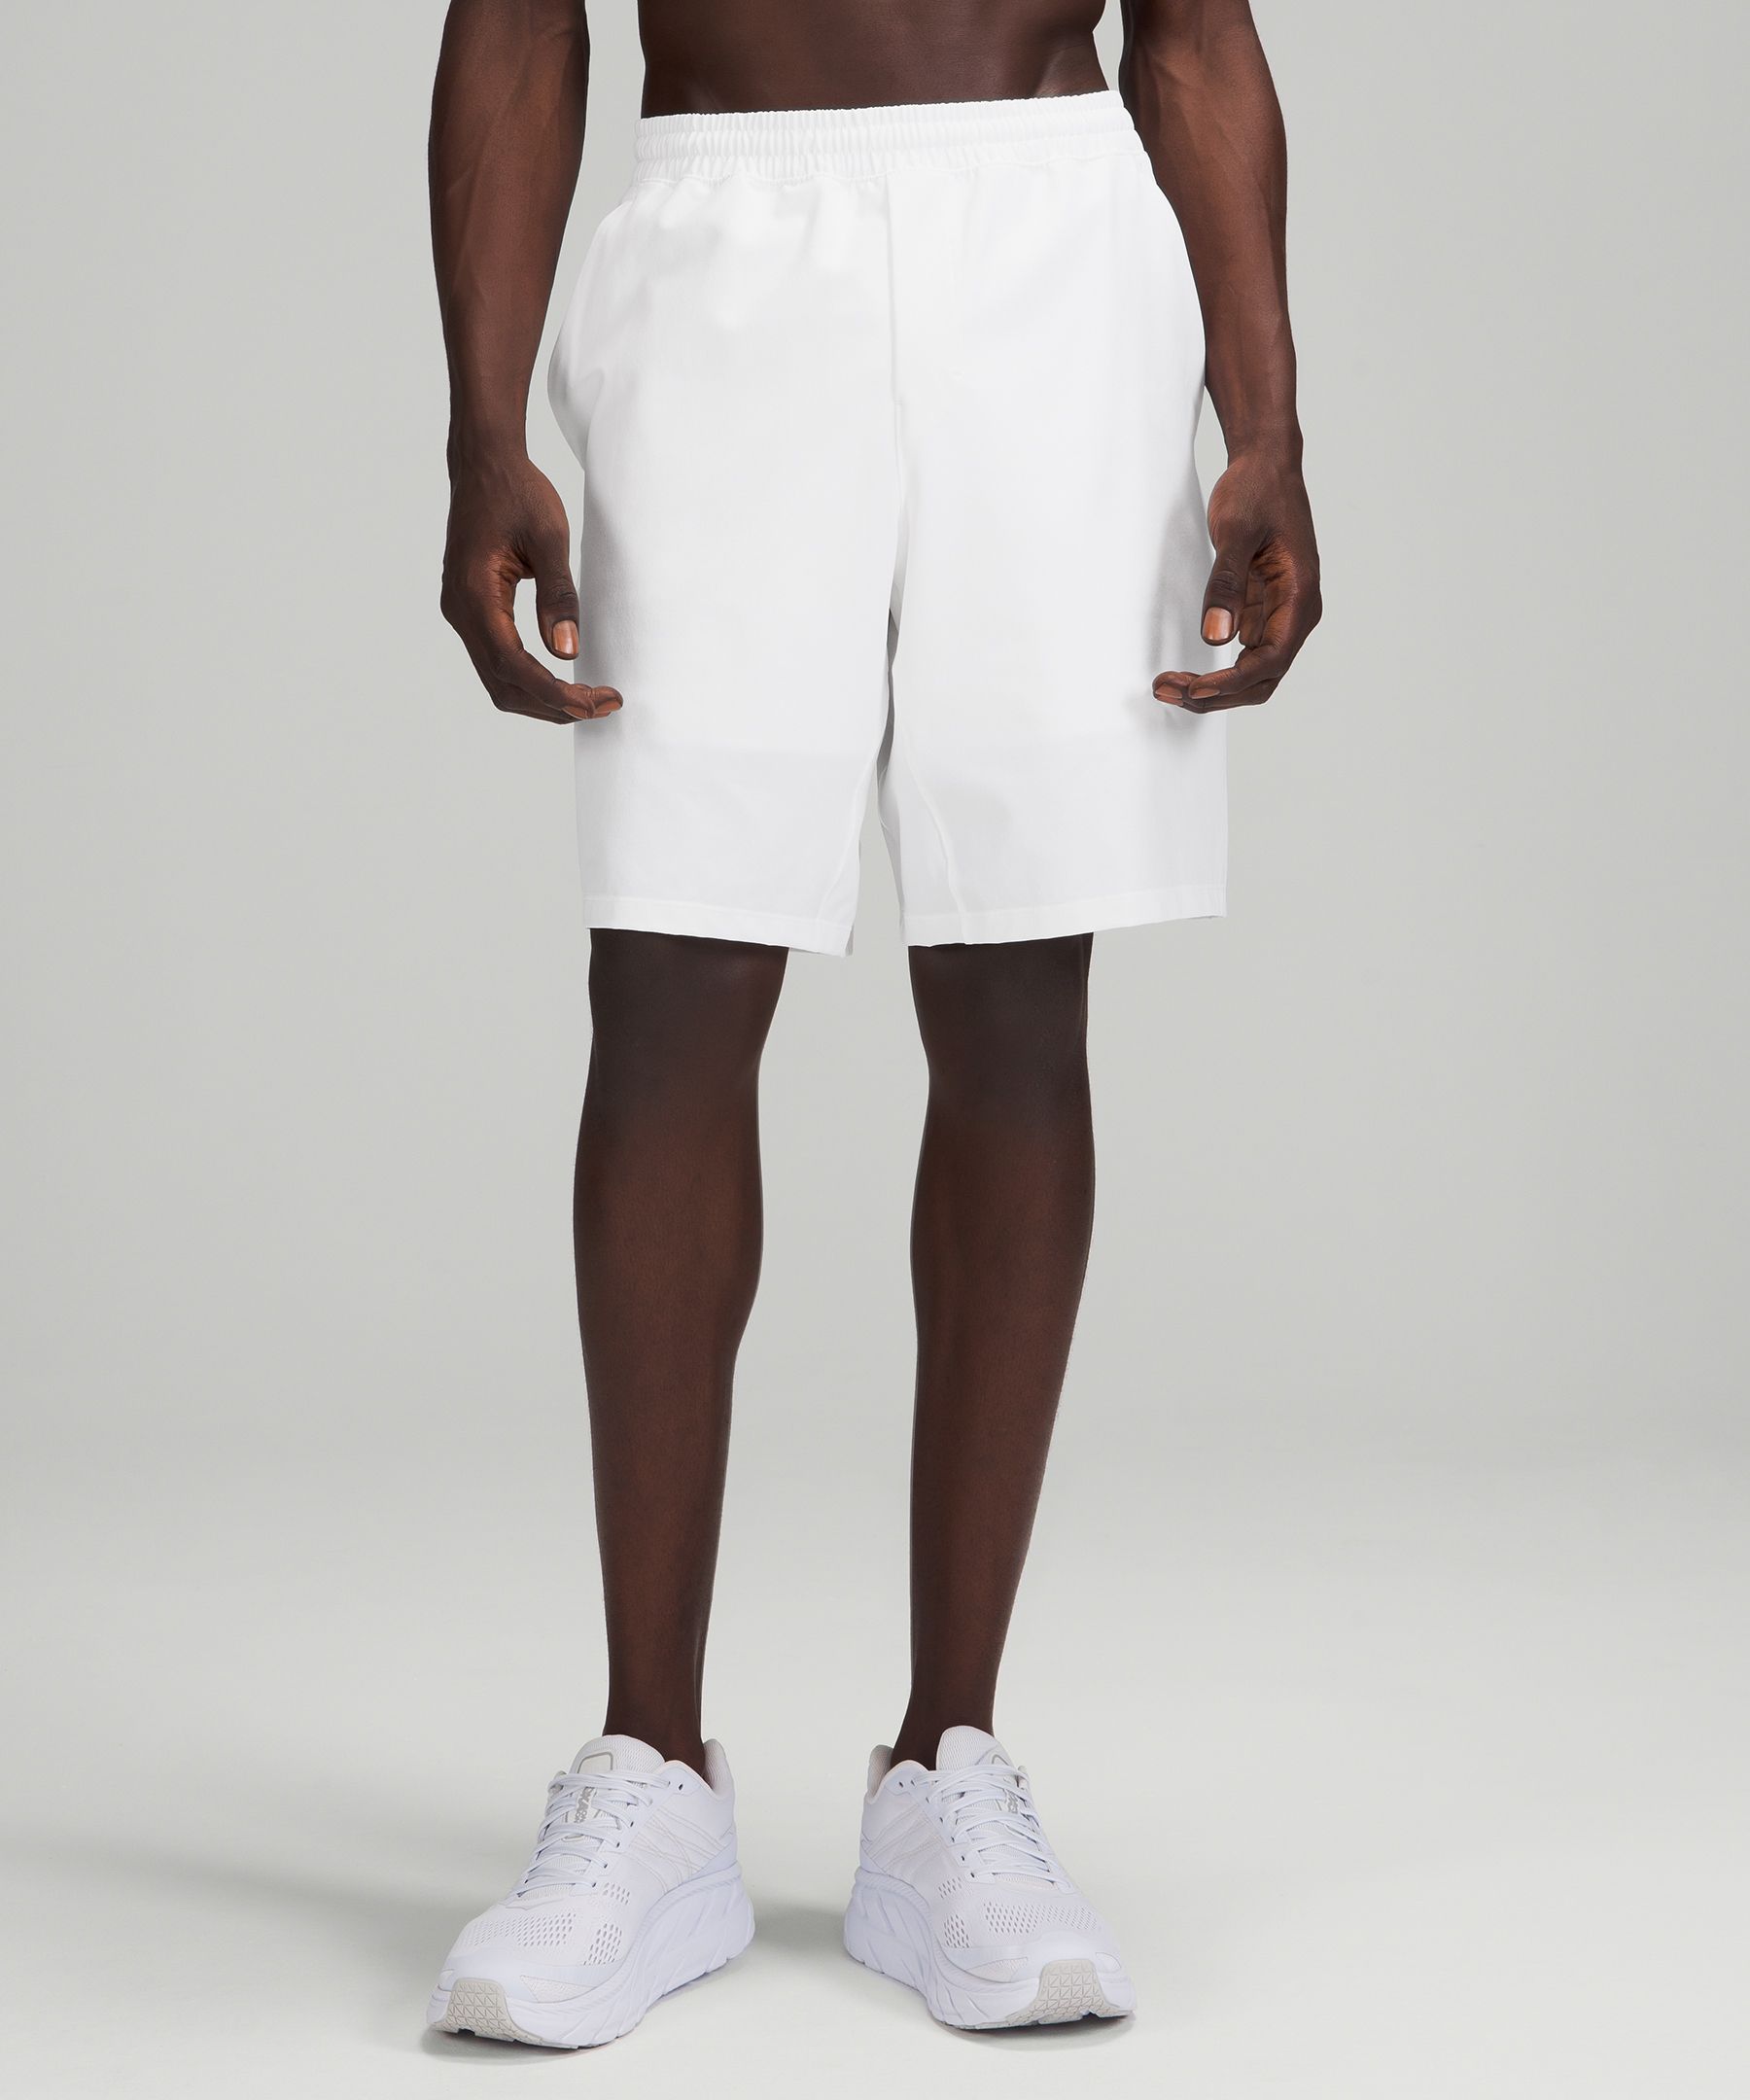 Lululemon Pace Breaker Lined Shorts 9" In White